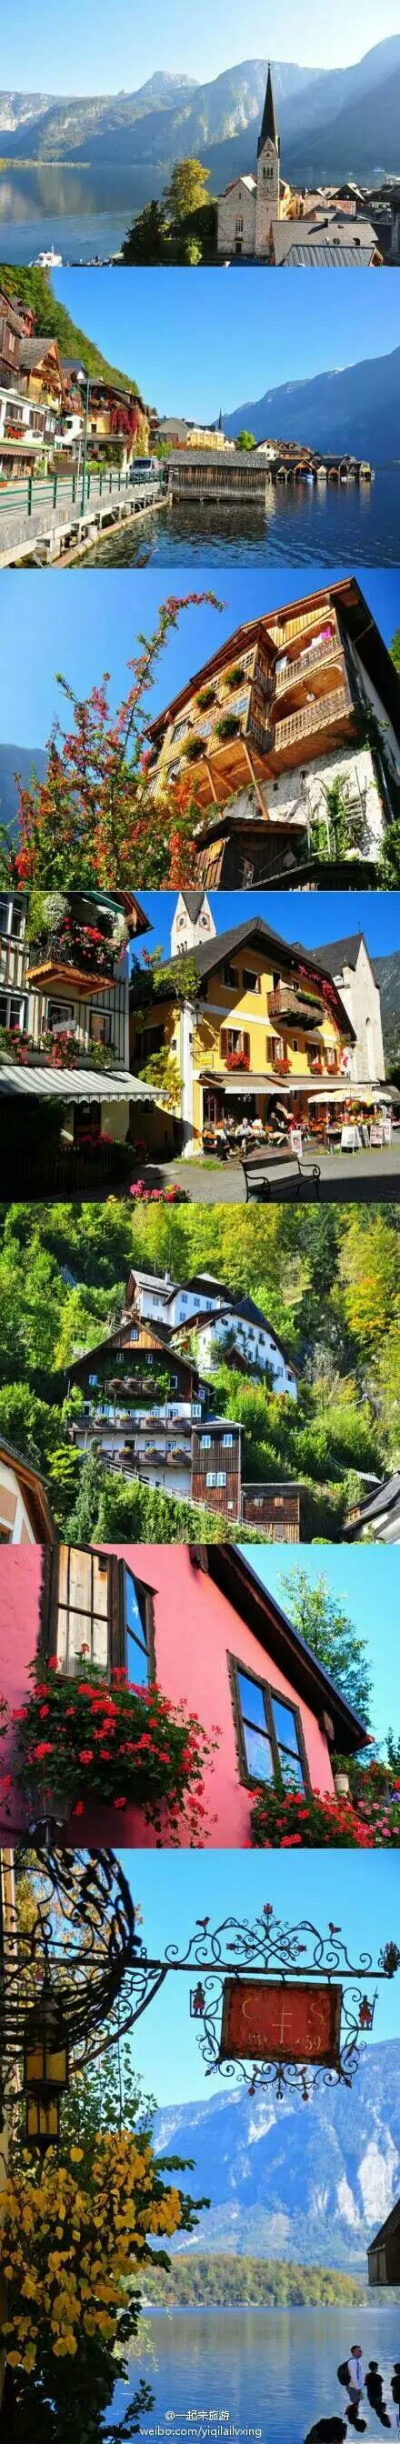 【奥地利－哈尔施塔特】一个精巧的，宛如童话般的小镇。这里的房子、街道都有远古的斑驳 ，湖边是梦幻仙境般的景色，路边林立的各式咖啡馆，这里也被称为世界上最美的湖畔小镇~